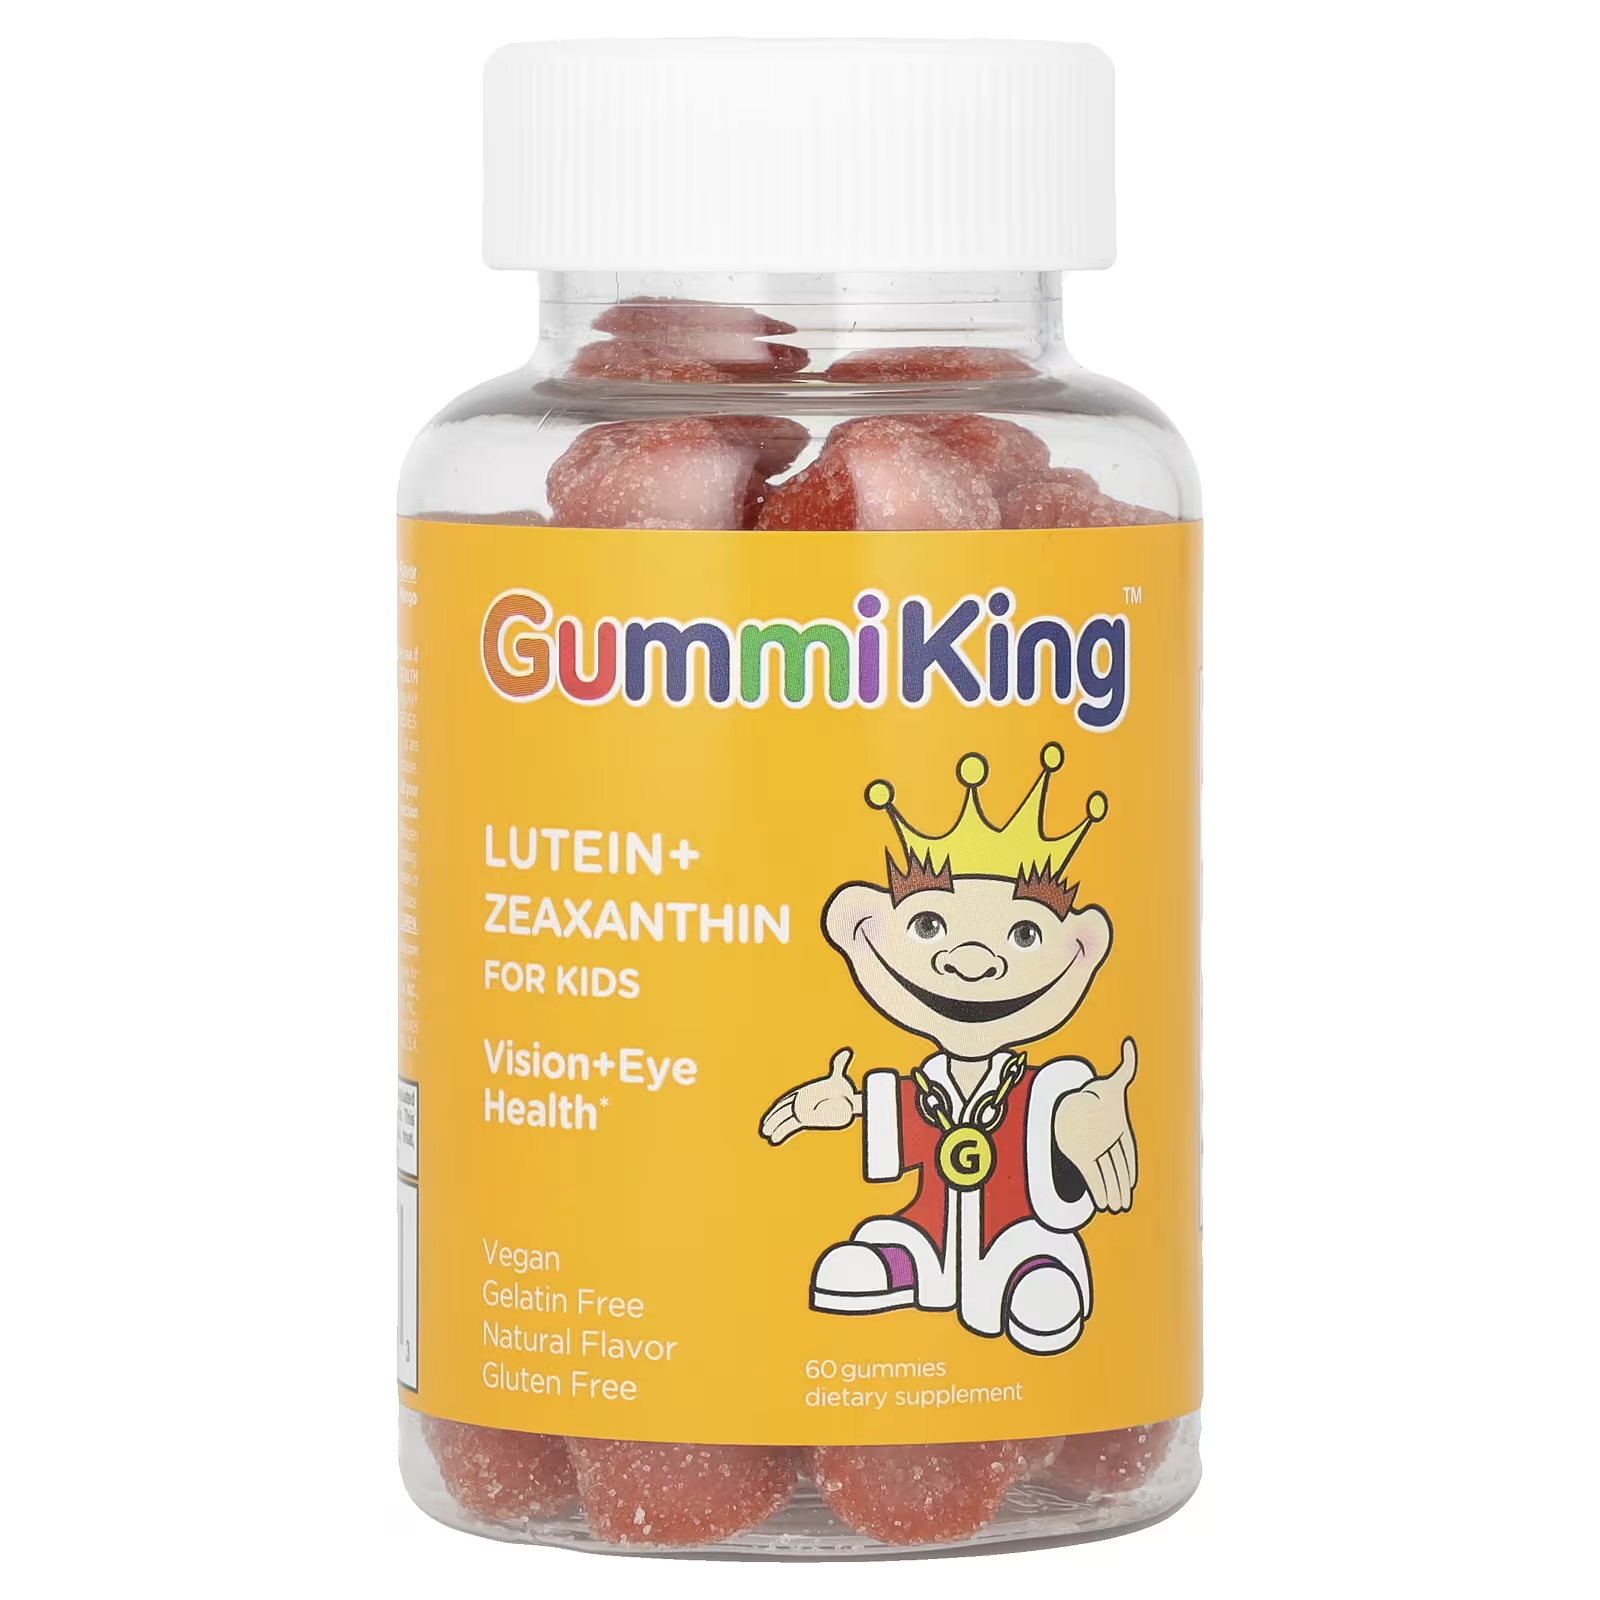 Жевательные конфеты для детей GummiKing Mango с лютеином и зеаксантином, 60 жевательных конфет gummiking лютеин и зеаксантин для детей 60 жевательных таблеток со вкусом манго